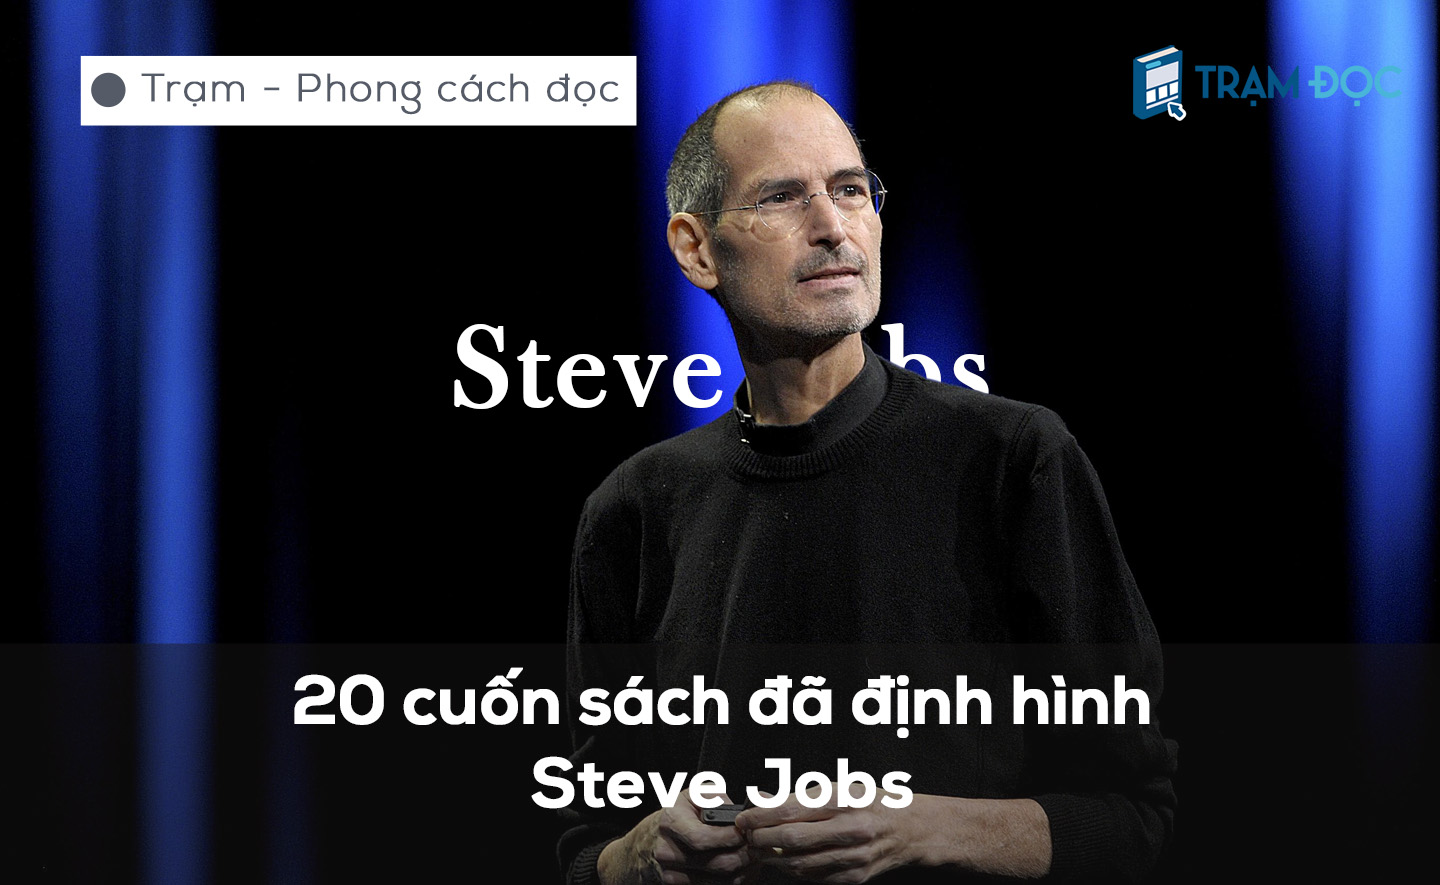 20 cuốn sách đã định hình Steve Jobs